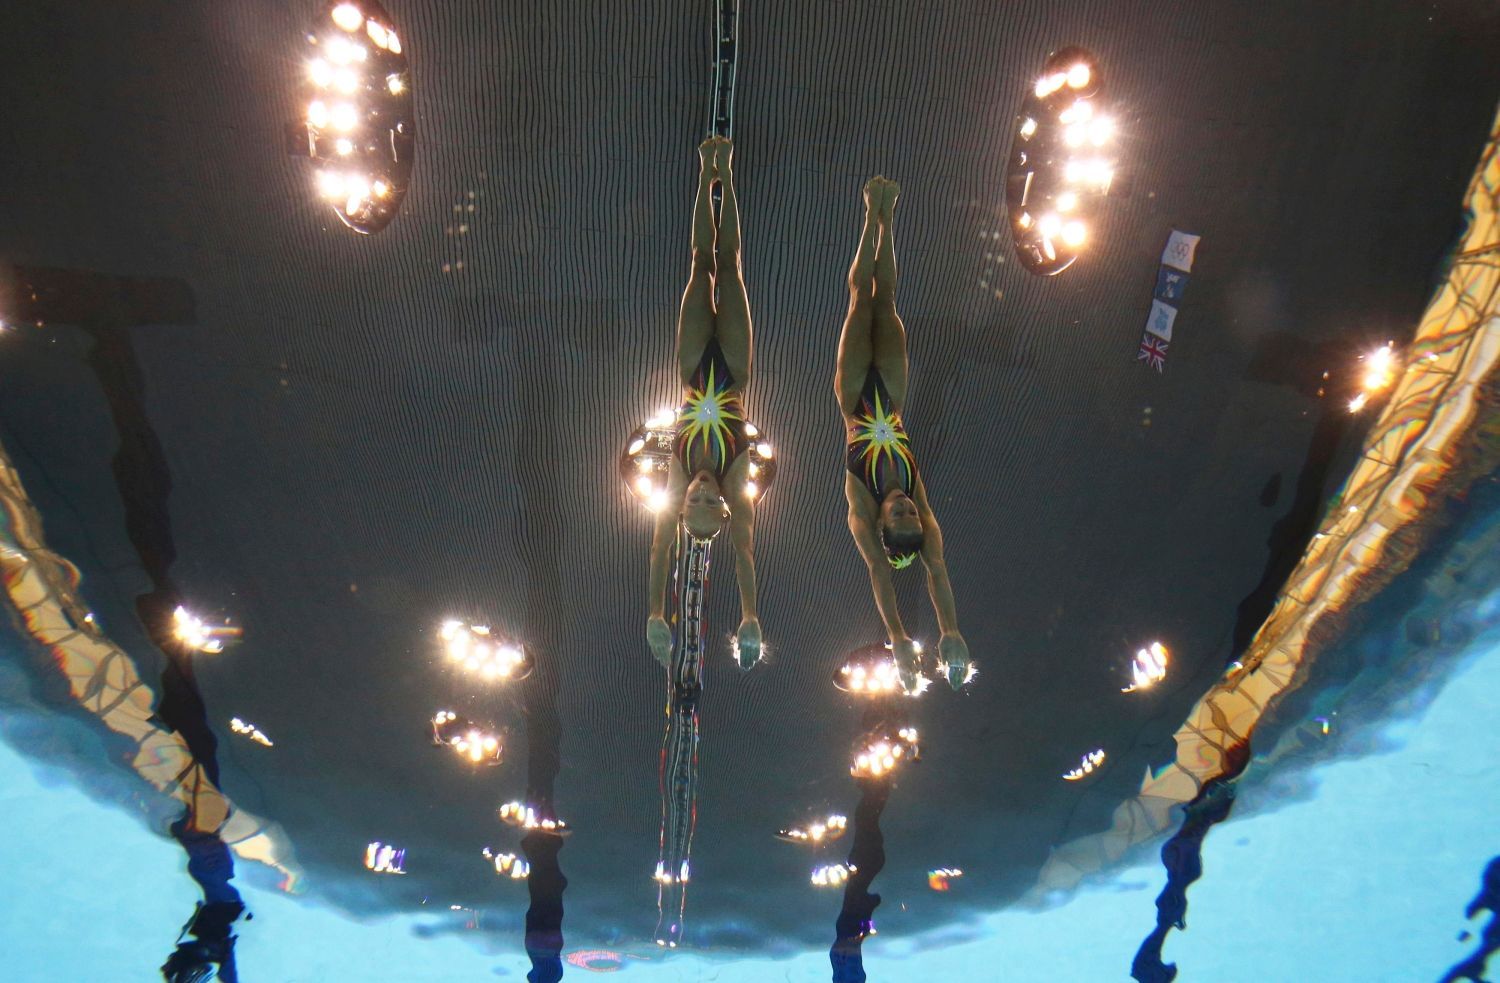 České synchronizované plavkyně Soňa Bernardová a Alžběta Dufková v kvalifikaci na OH 2012 v Londýně.